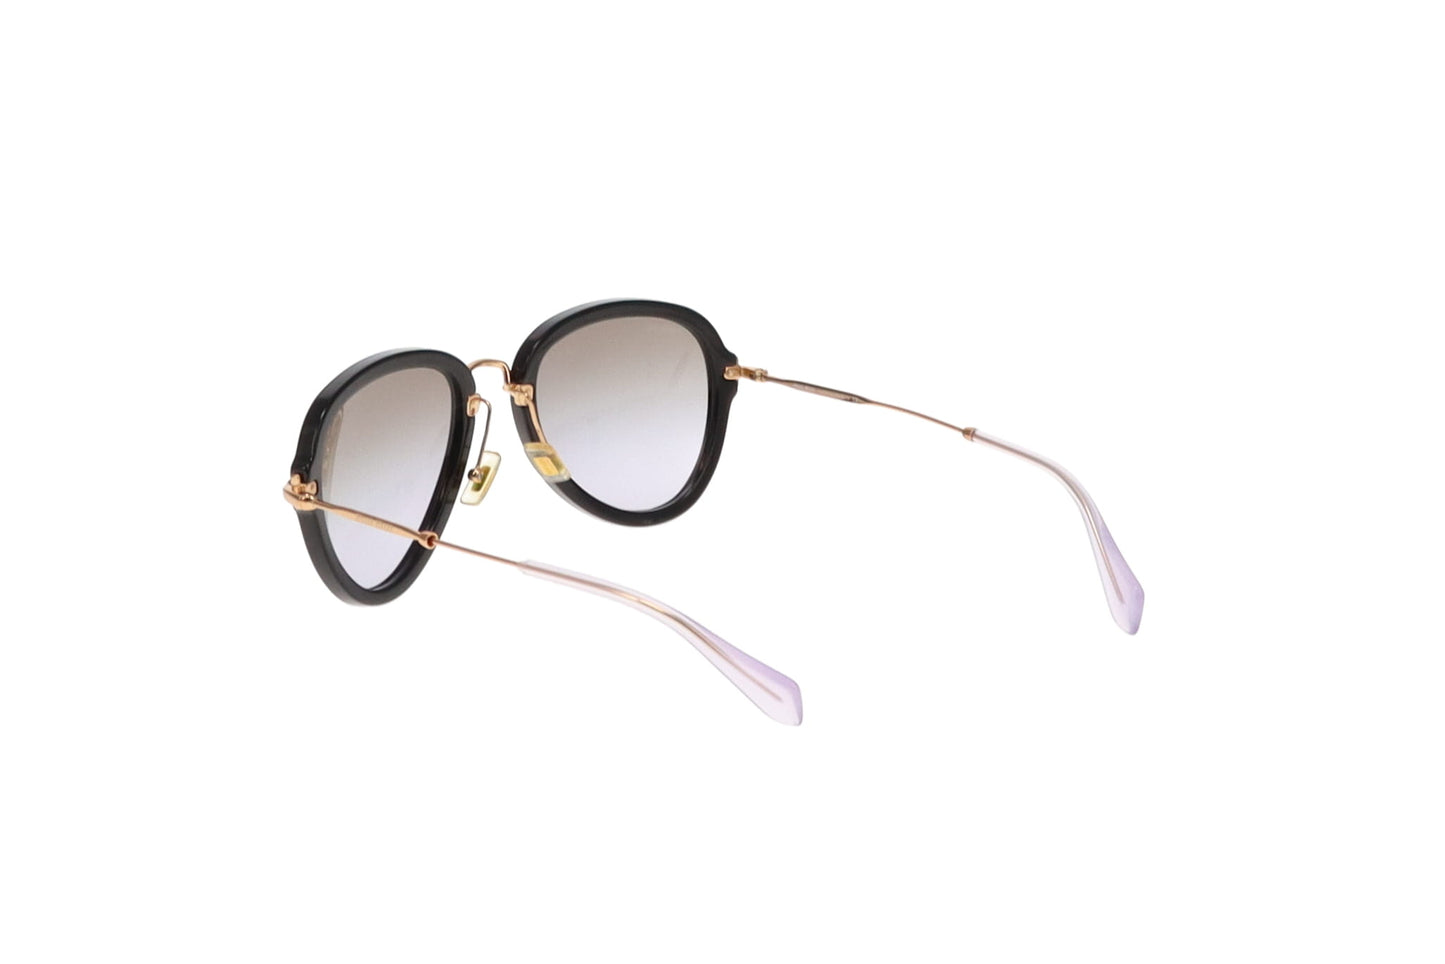 Miu Miu SMU03Q Black and Gold Aviator Style Sunglasses